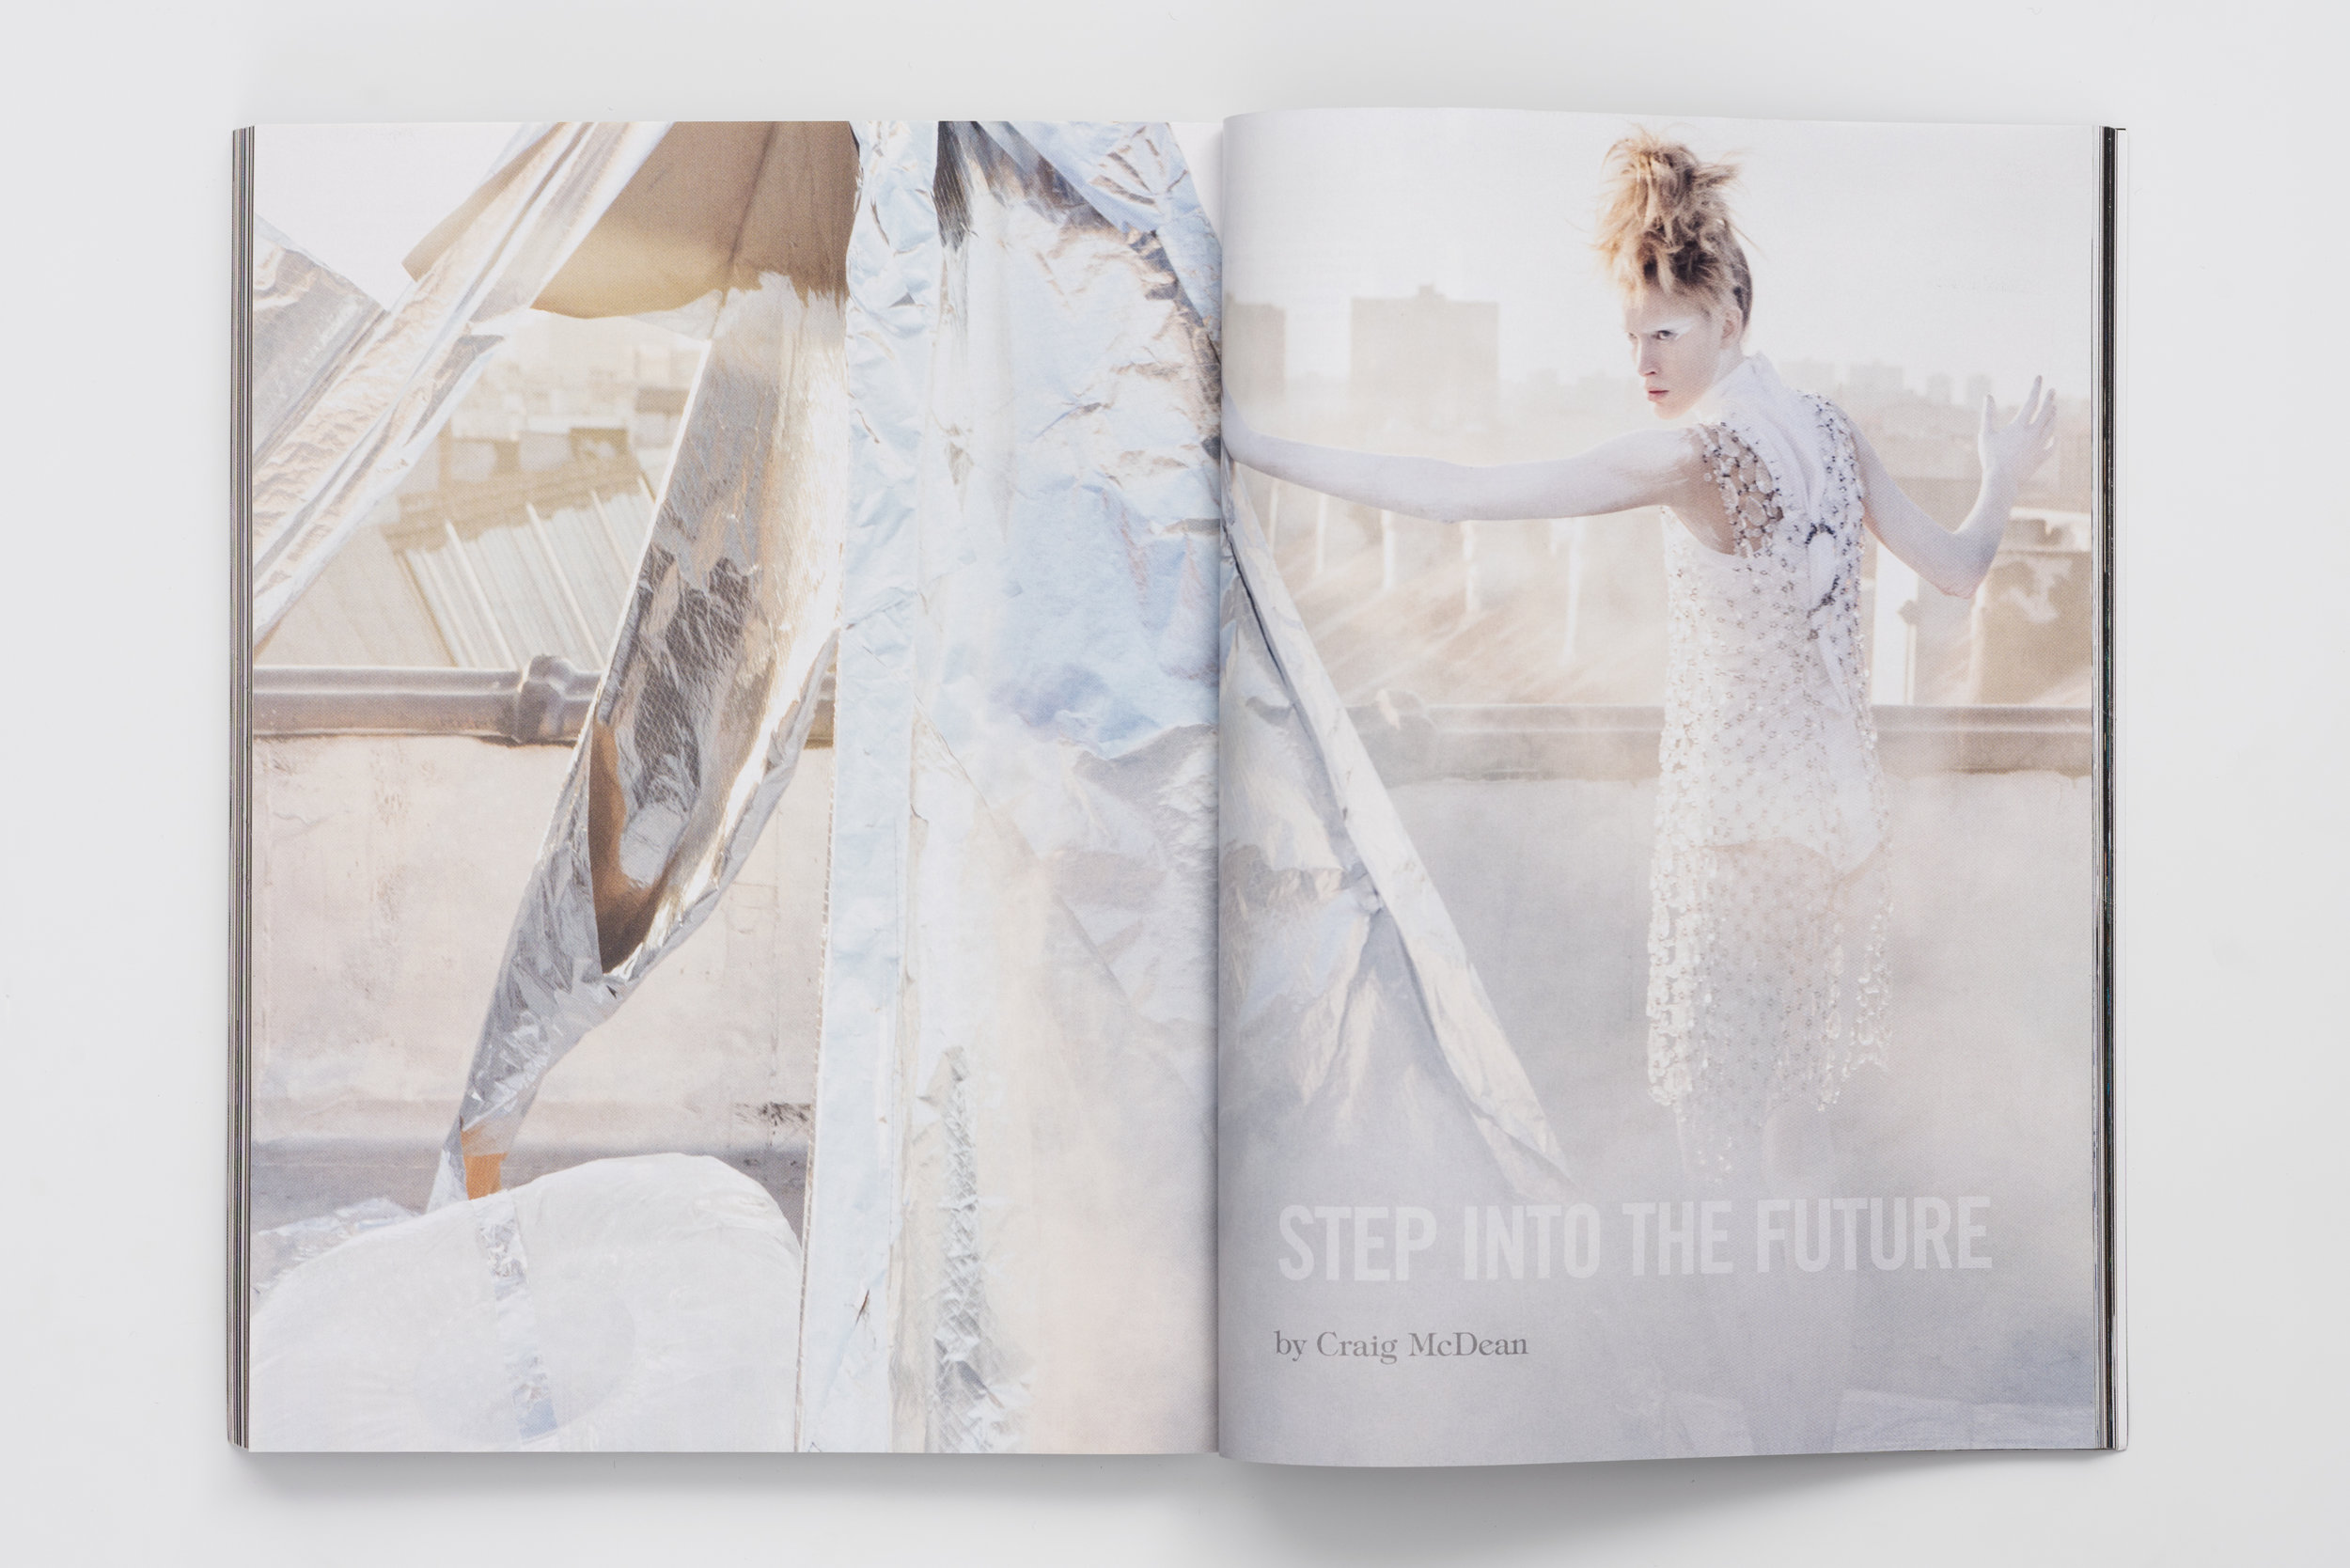 Iselin Steiro_Craig McDean_Vogue Italia_Step Into The Future_1.jpg